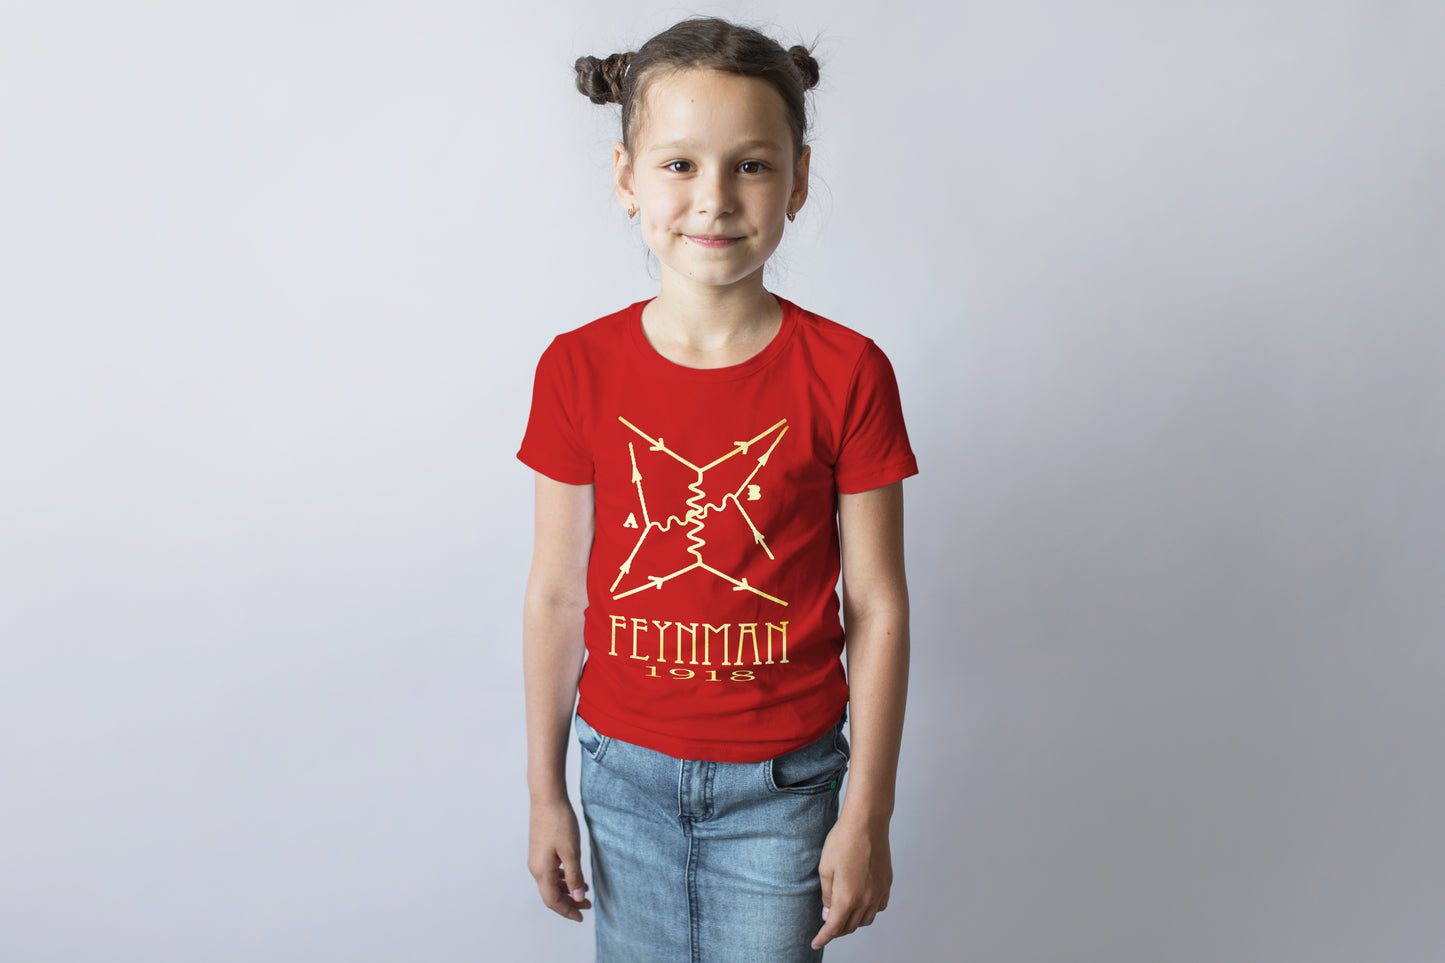 Feynman Diagram Physics T-shirt, Richard Feynman Physicist Graphic Tee